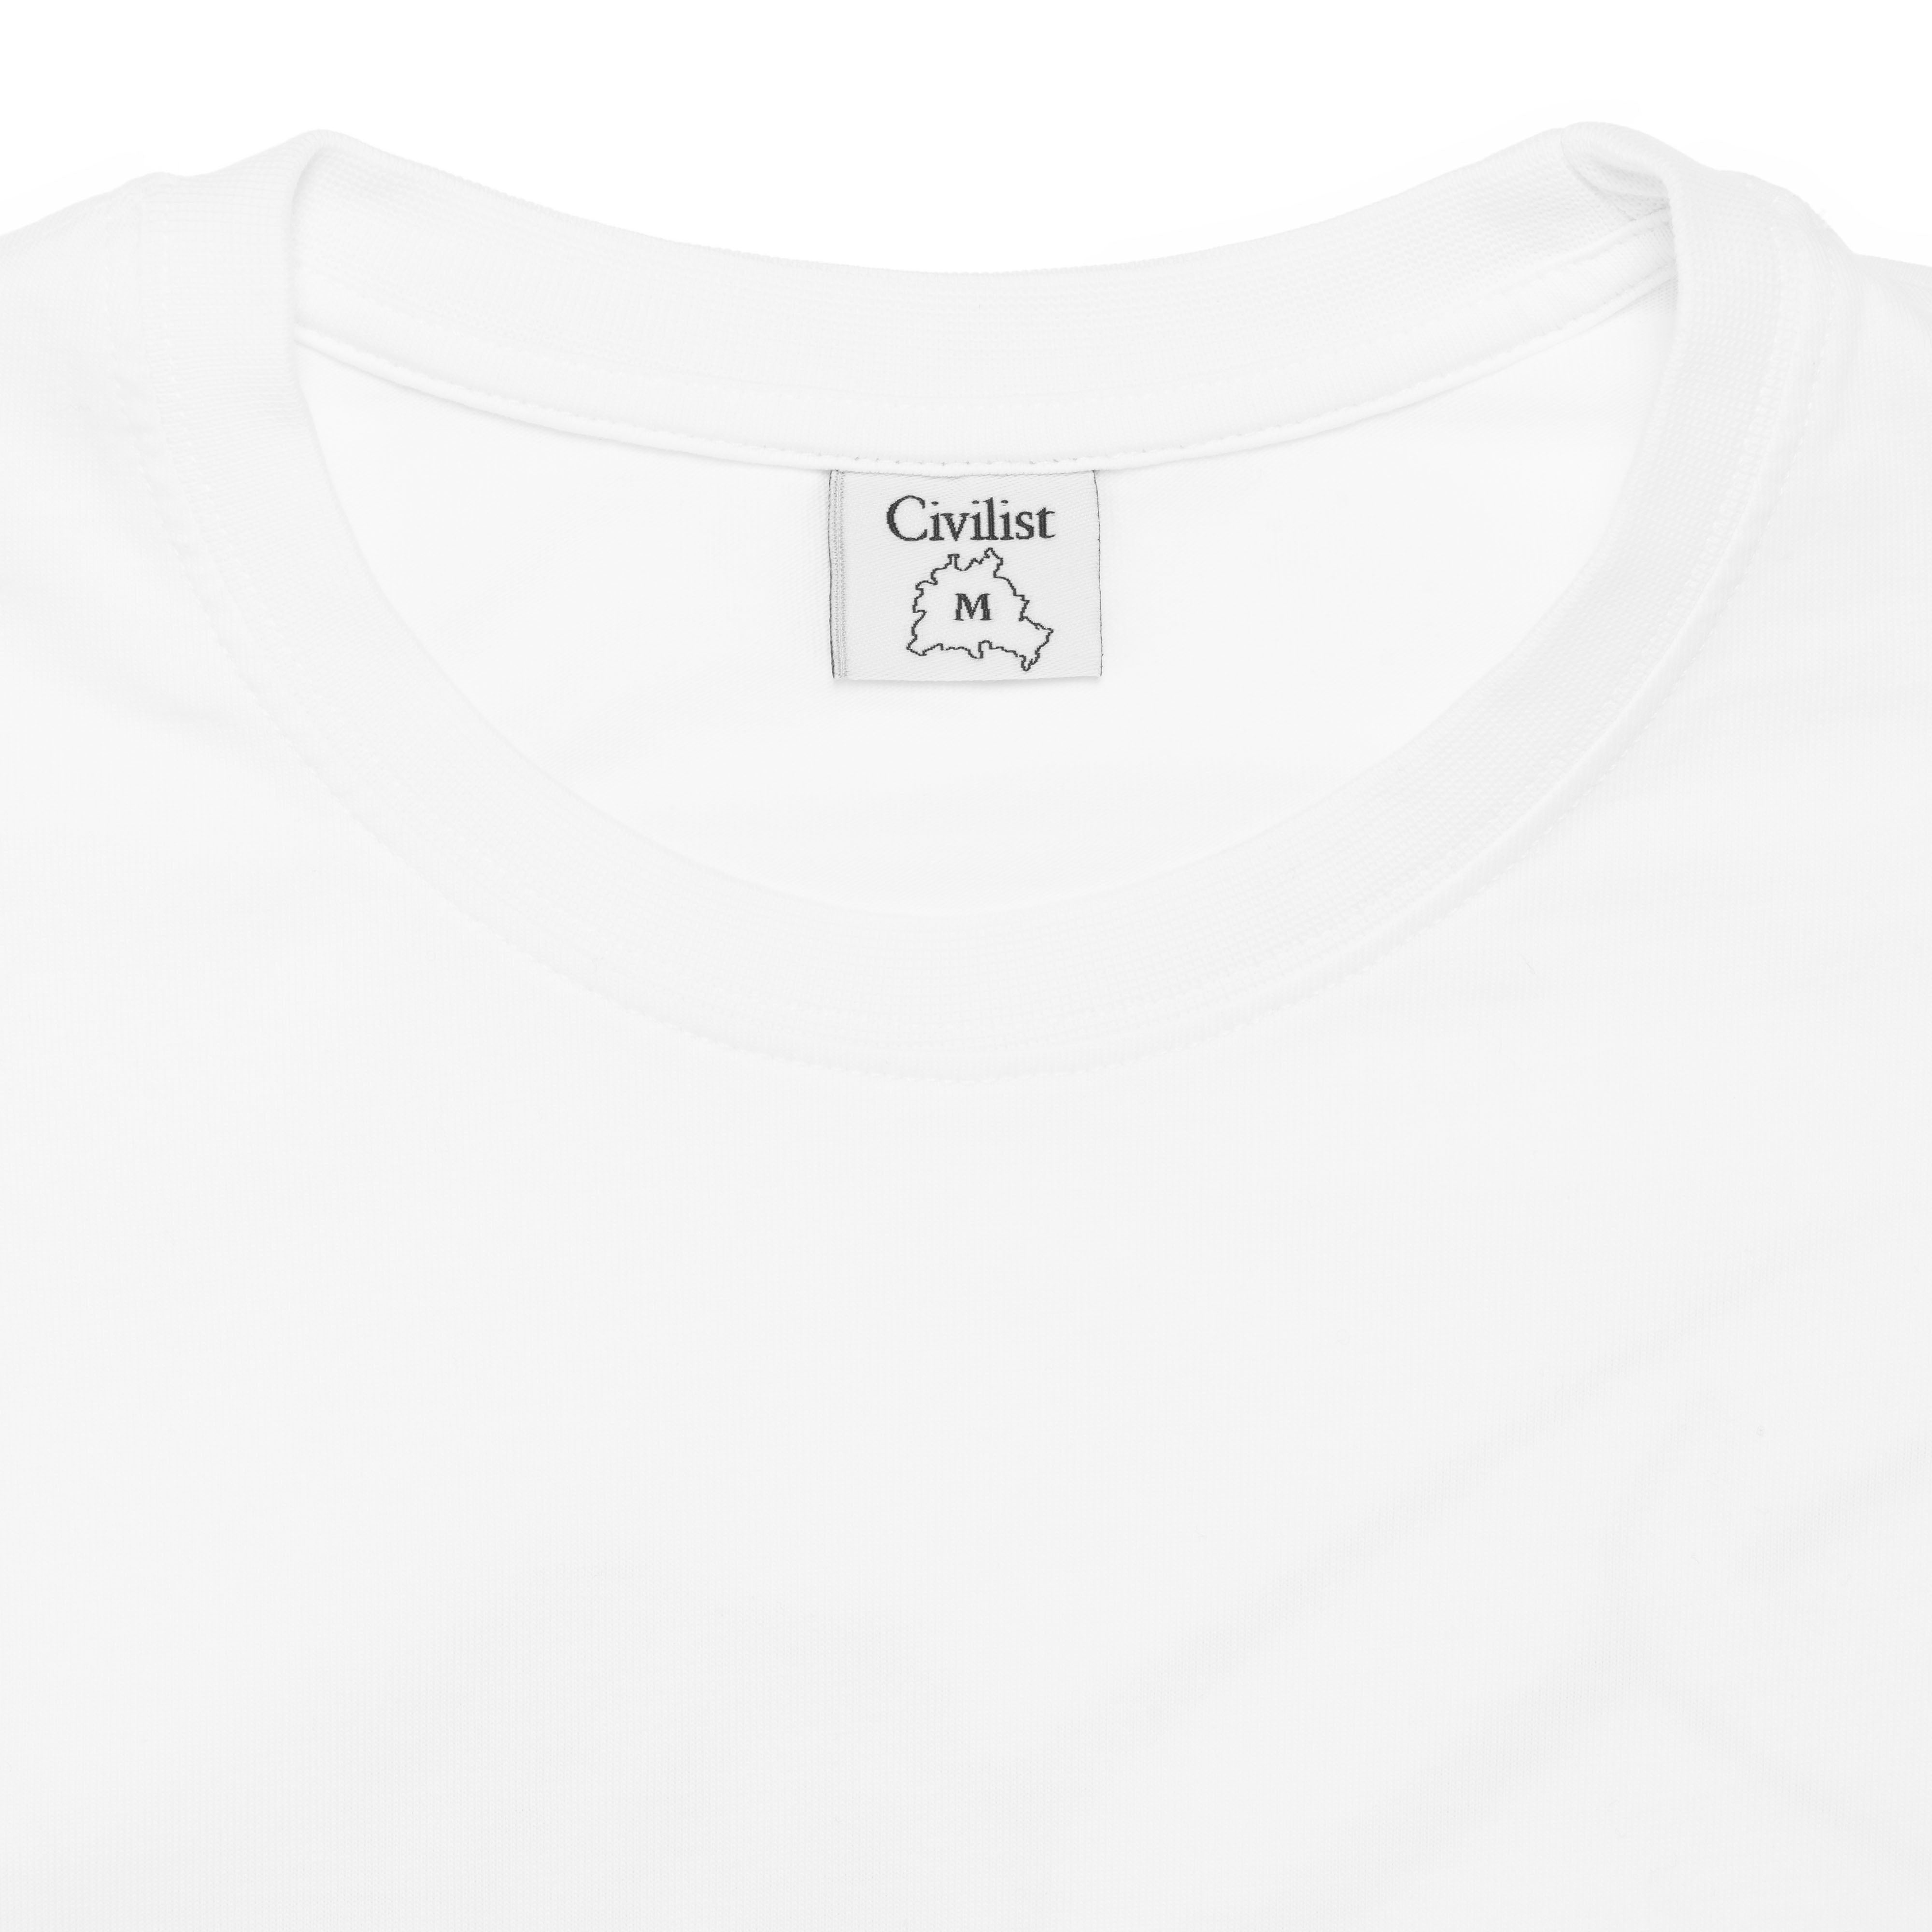 Civilist Schmatzer T-shirt - White